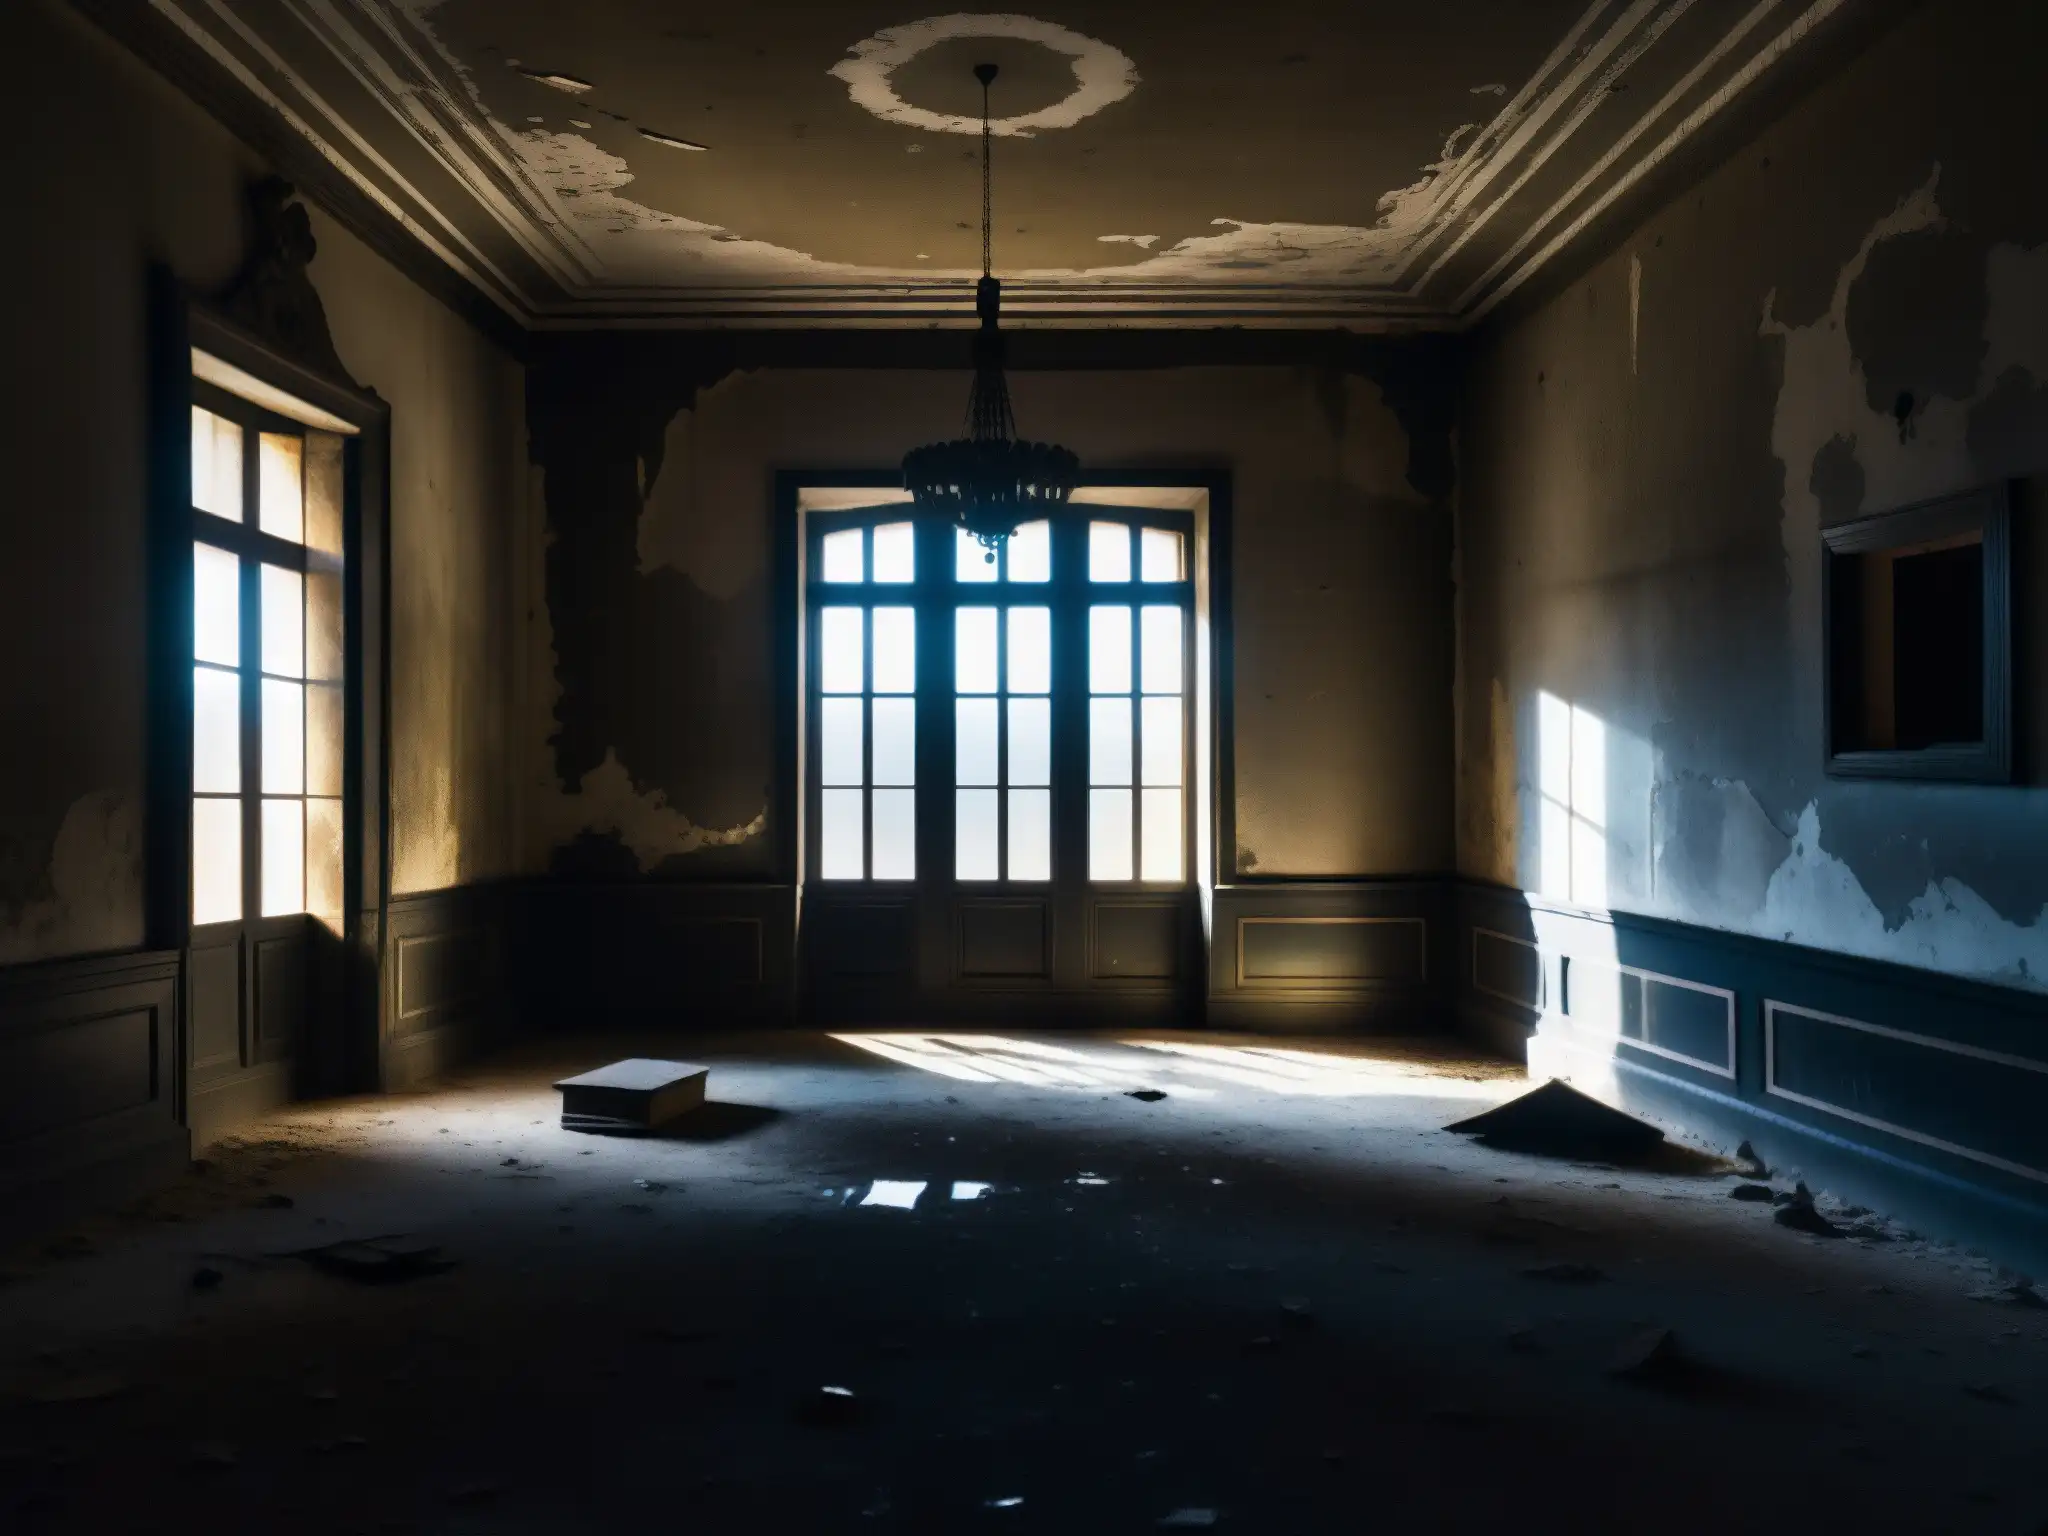 Una fotografía en blanco y negro del interior abandonado y deteriorado del Palacio de Lecumberri, con una atmósfera de misterio y la presencia fantasmal del Palacio de Lecumberri